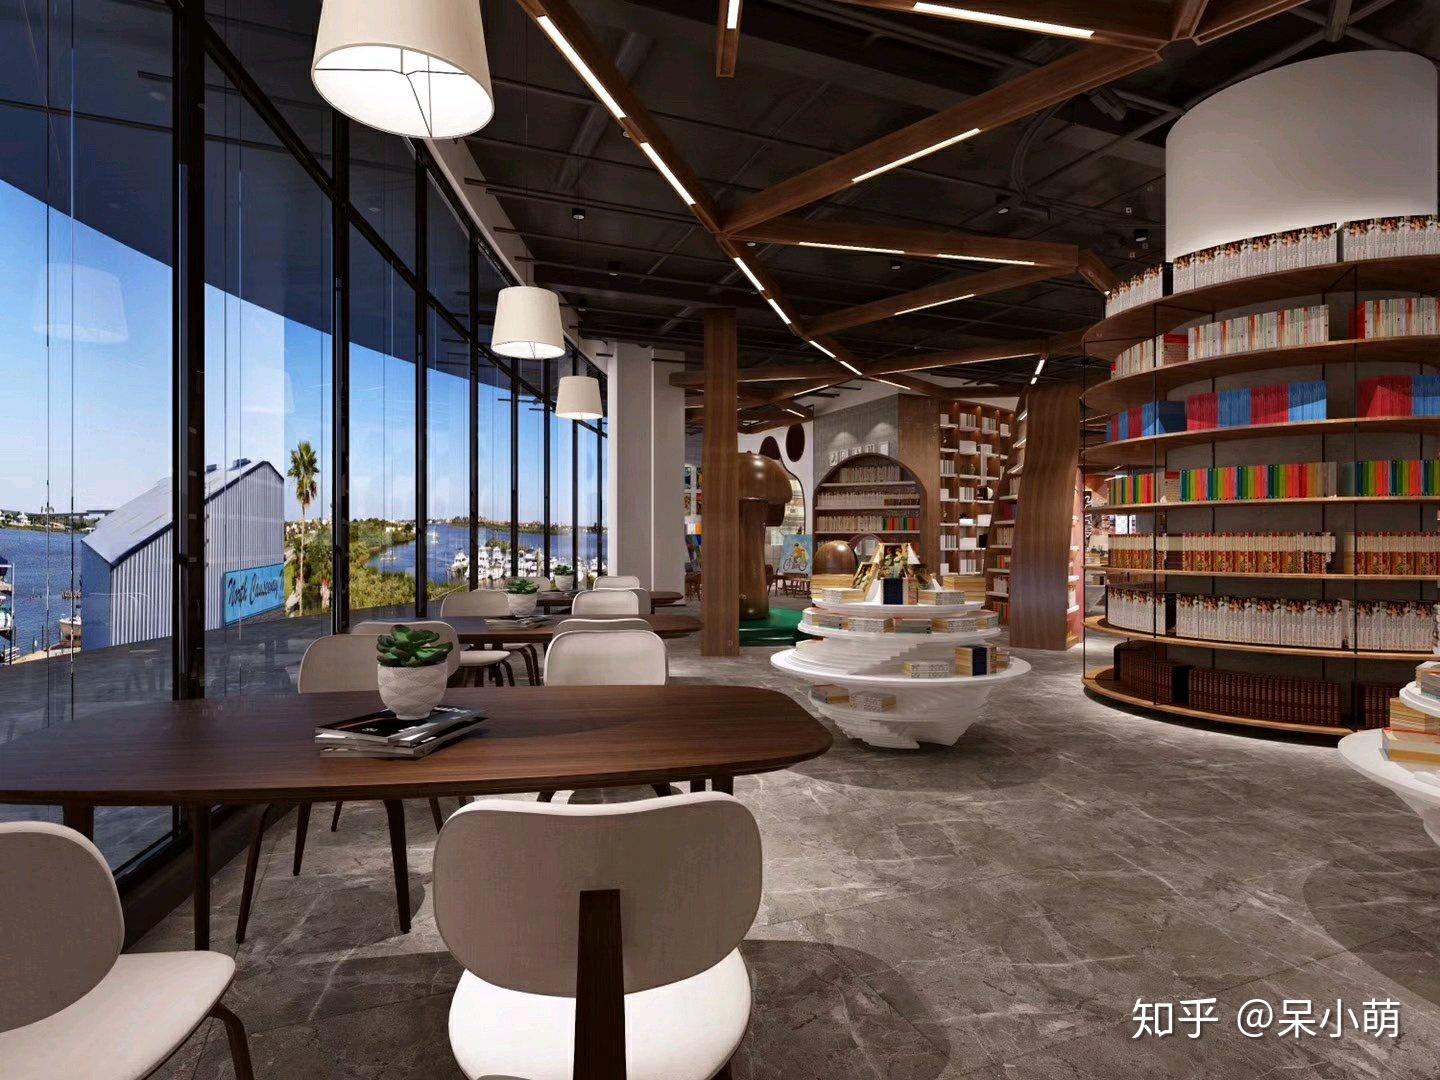 享受悠闲的阅读时光:里约热内卢Saraiva书店空间设计商业空间室内设计联盟 - Powered by Discuz!